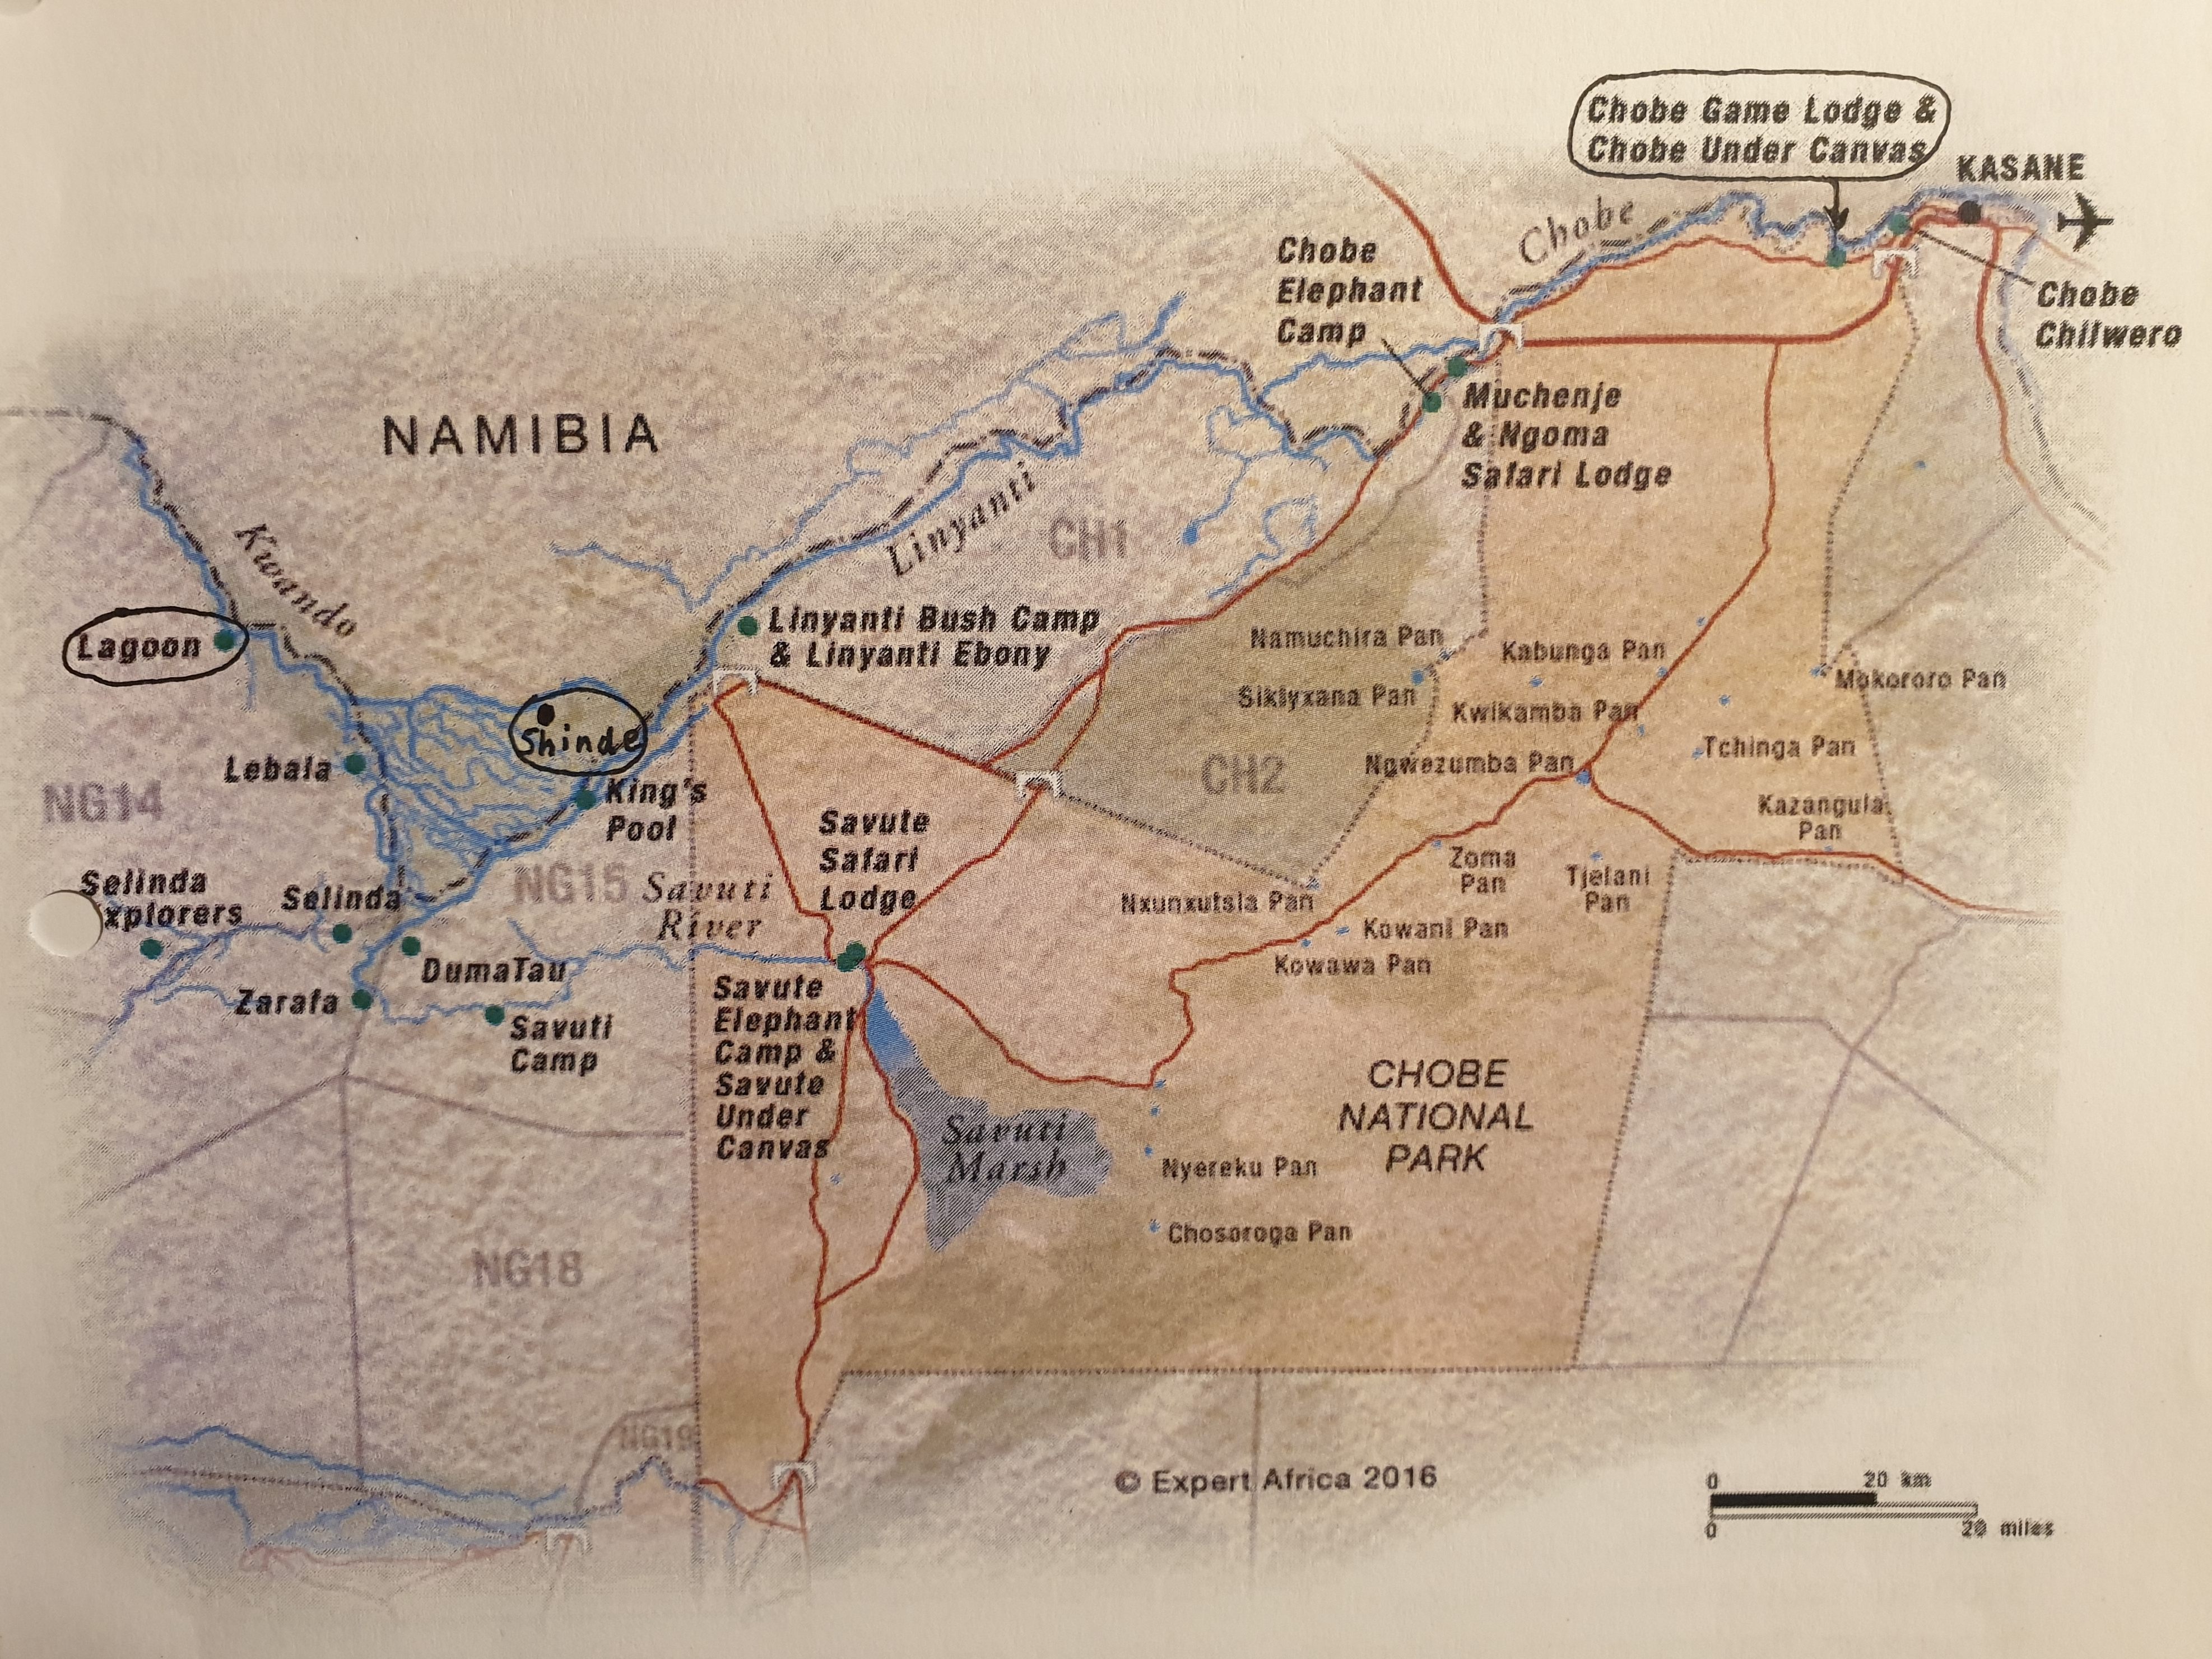 Carte du Nord du Botswana et du Parc National de Chobe (Chobe National Park) situant les 3 zones visitées pendant notre séjour au Botswana.